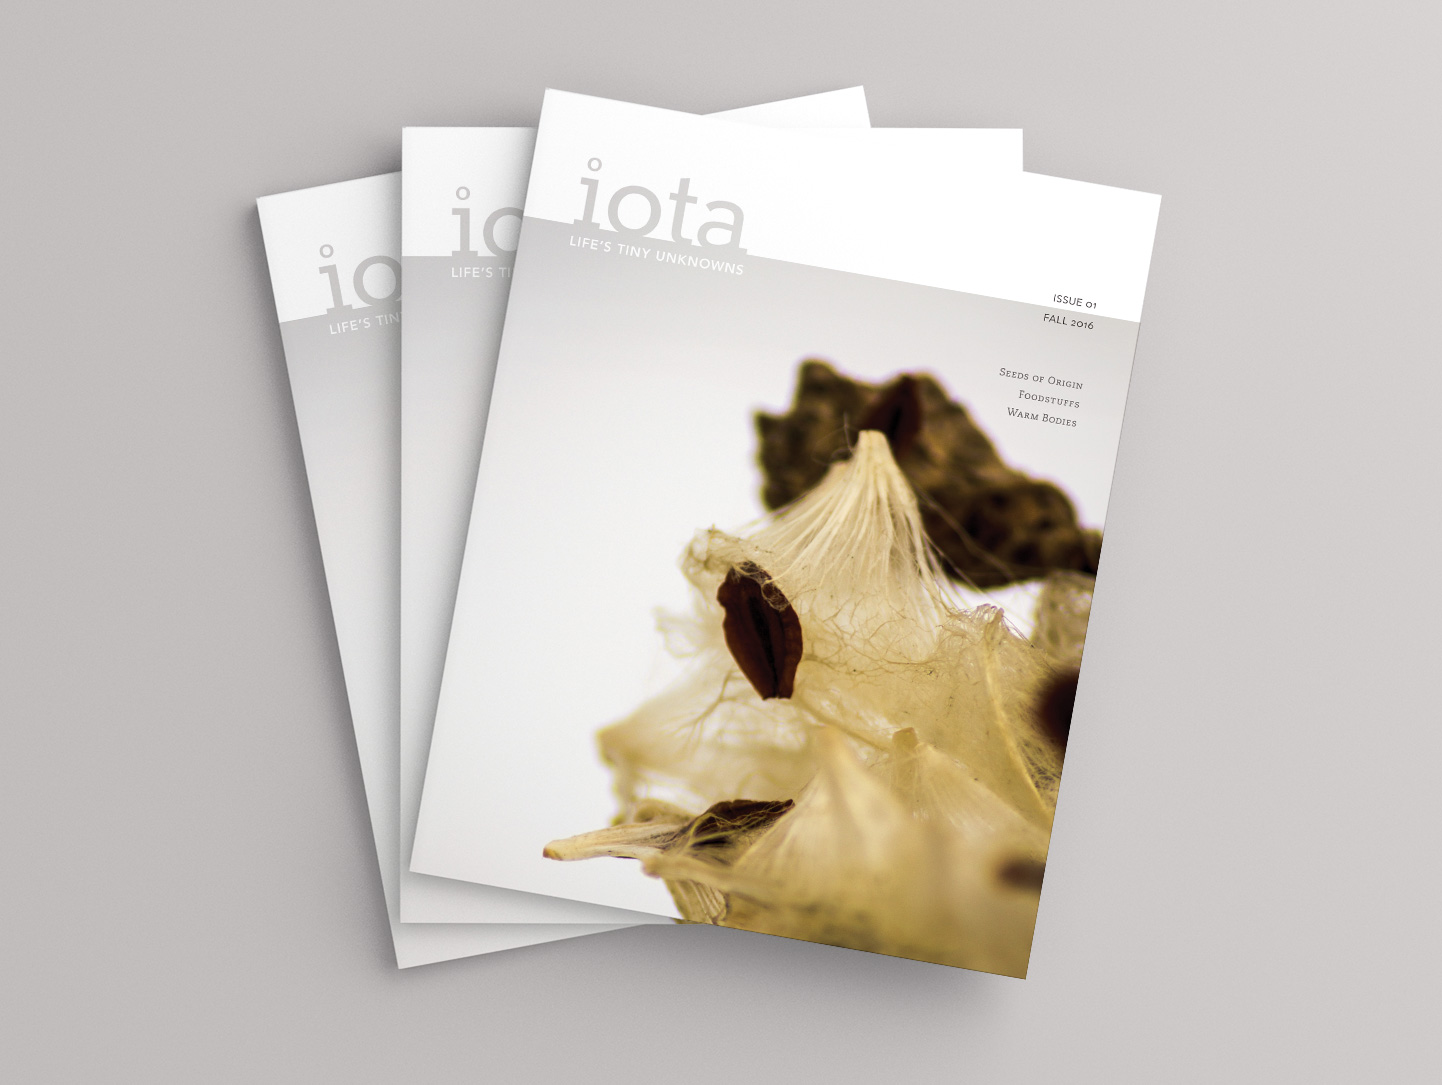 iota magazine by Jenn Woodham